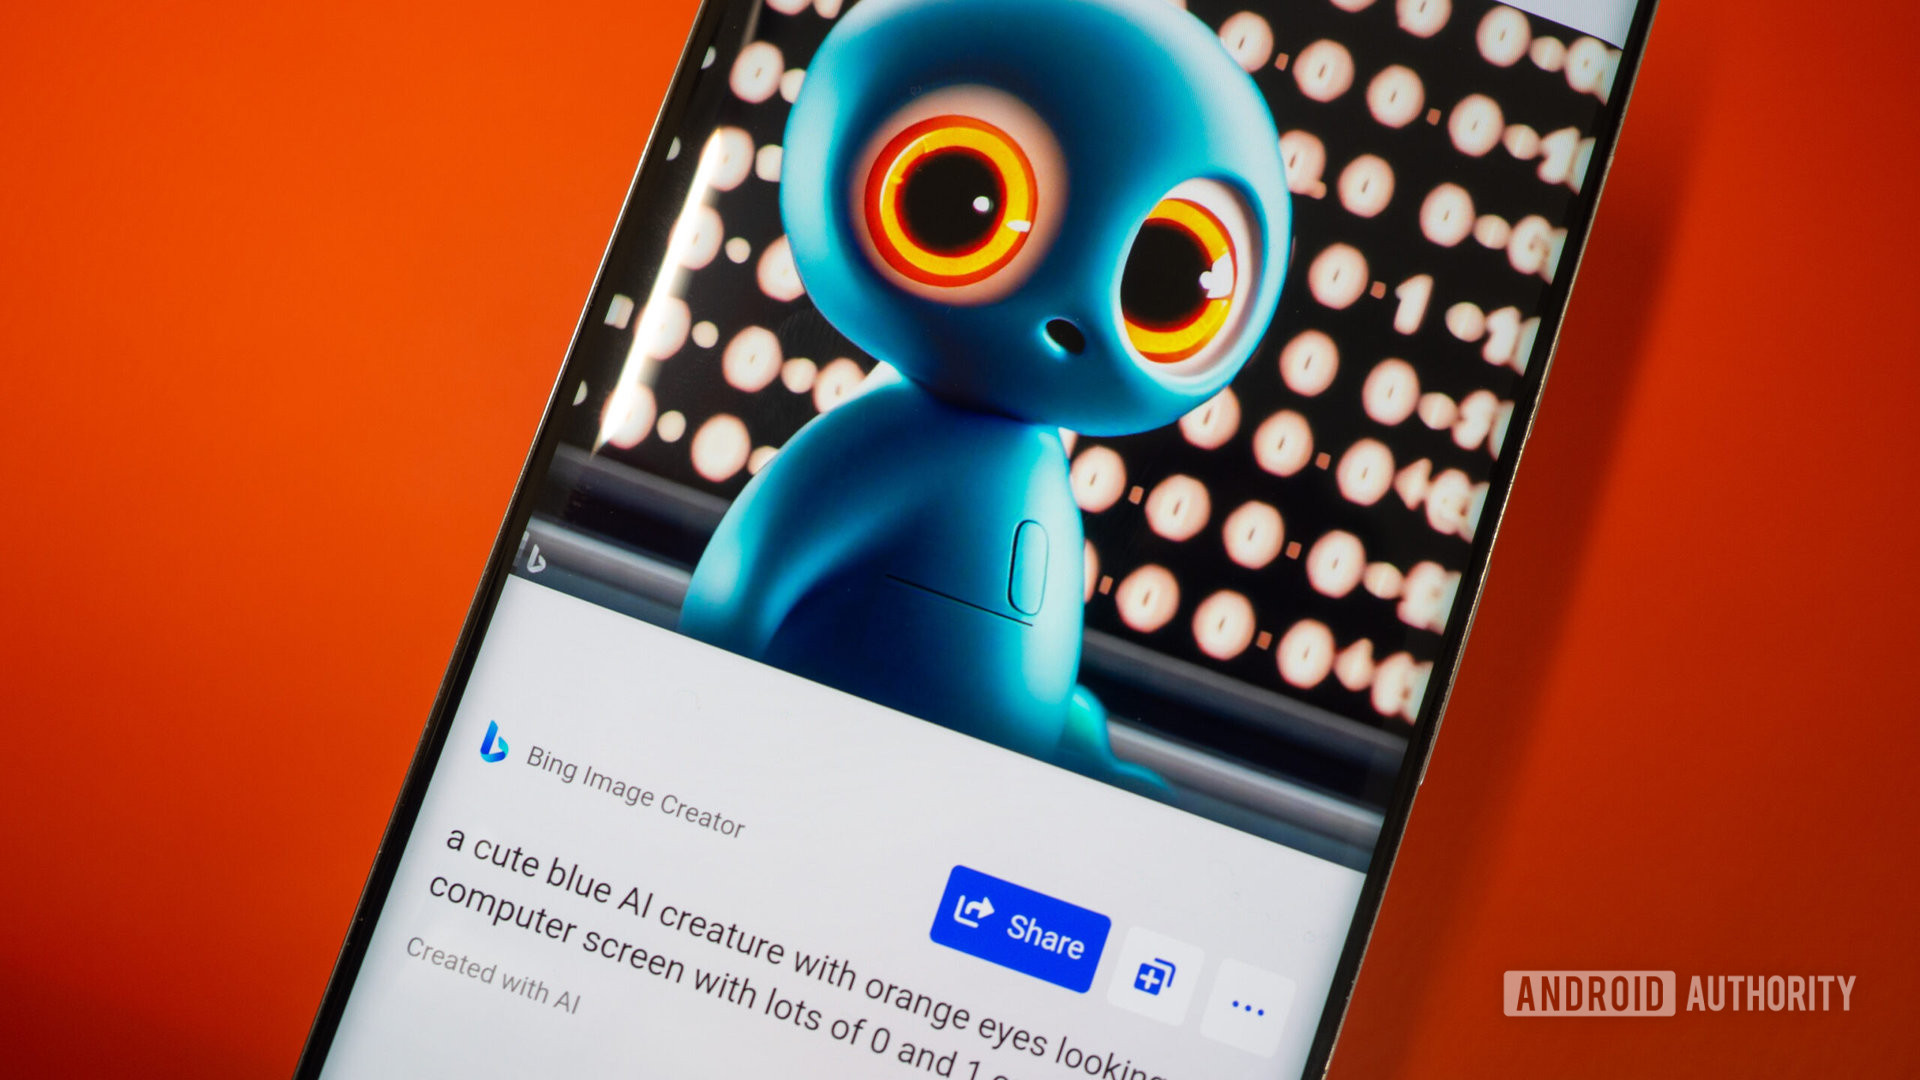 शून्य और एक वाले डिस्प्ले के सामने नारंगी आंखों वाले नीले AI प्राणी की एक छवि दिखाते हुए फ़ोन पर Bing इमेज क्रिएटर